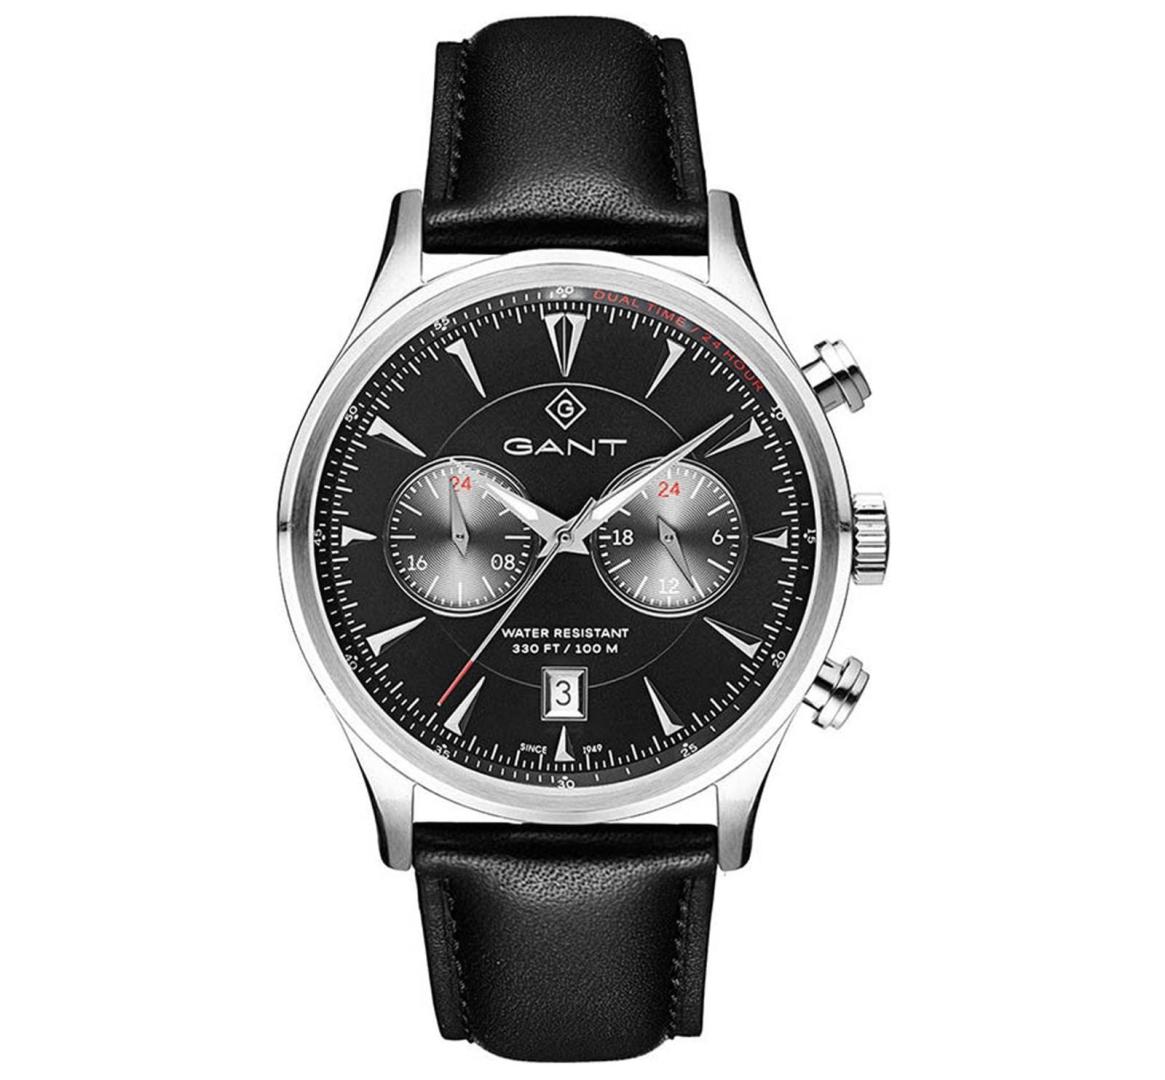 שעון יד אנלוגי לגבר gant g135004 גאנט